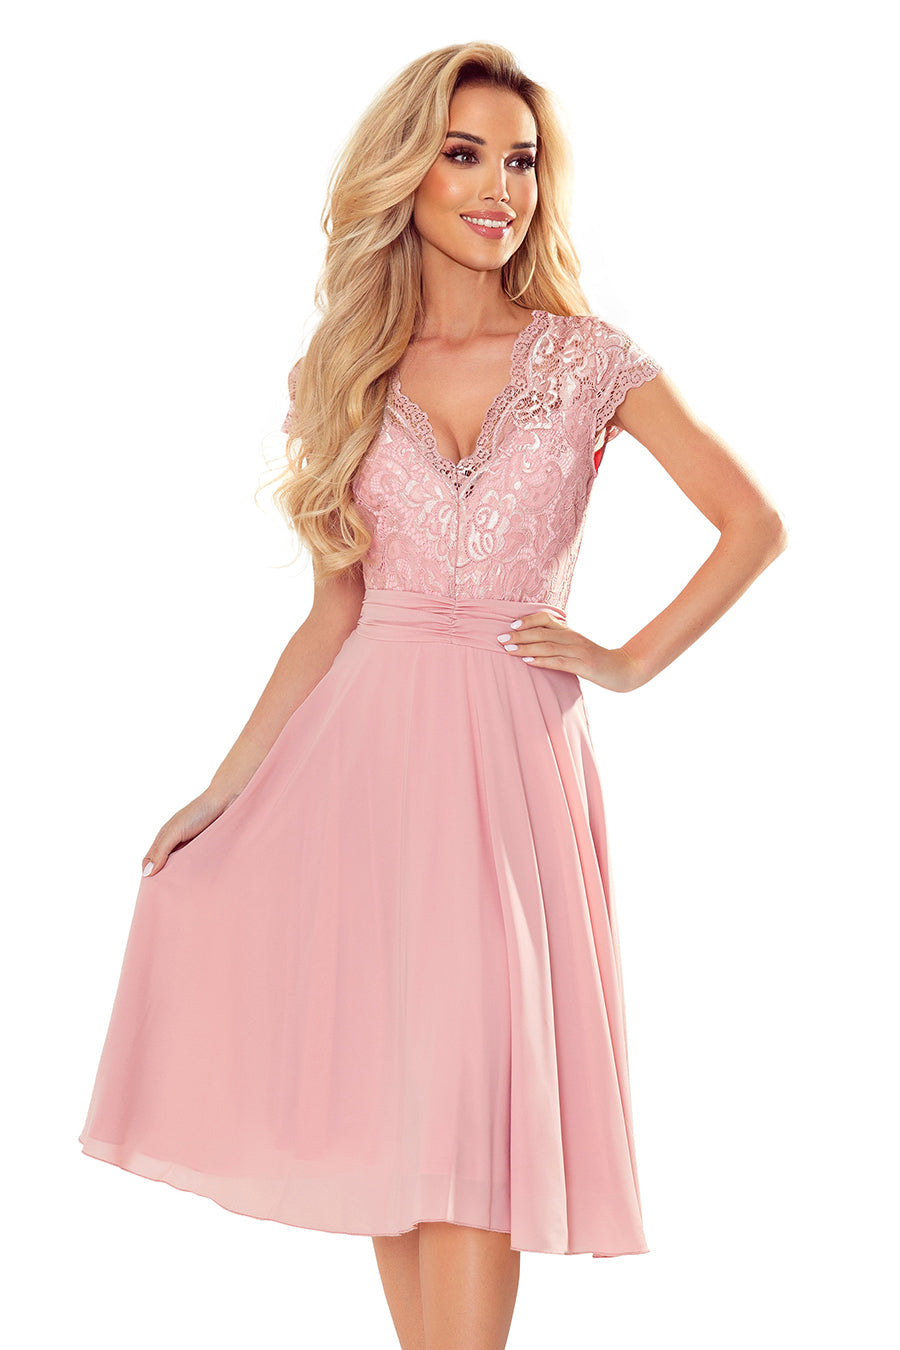 Γυναικείο φόρεμα Esmeray, Ροζ 2